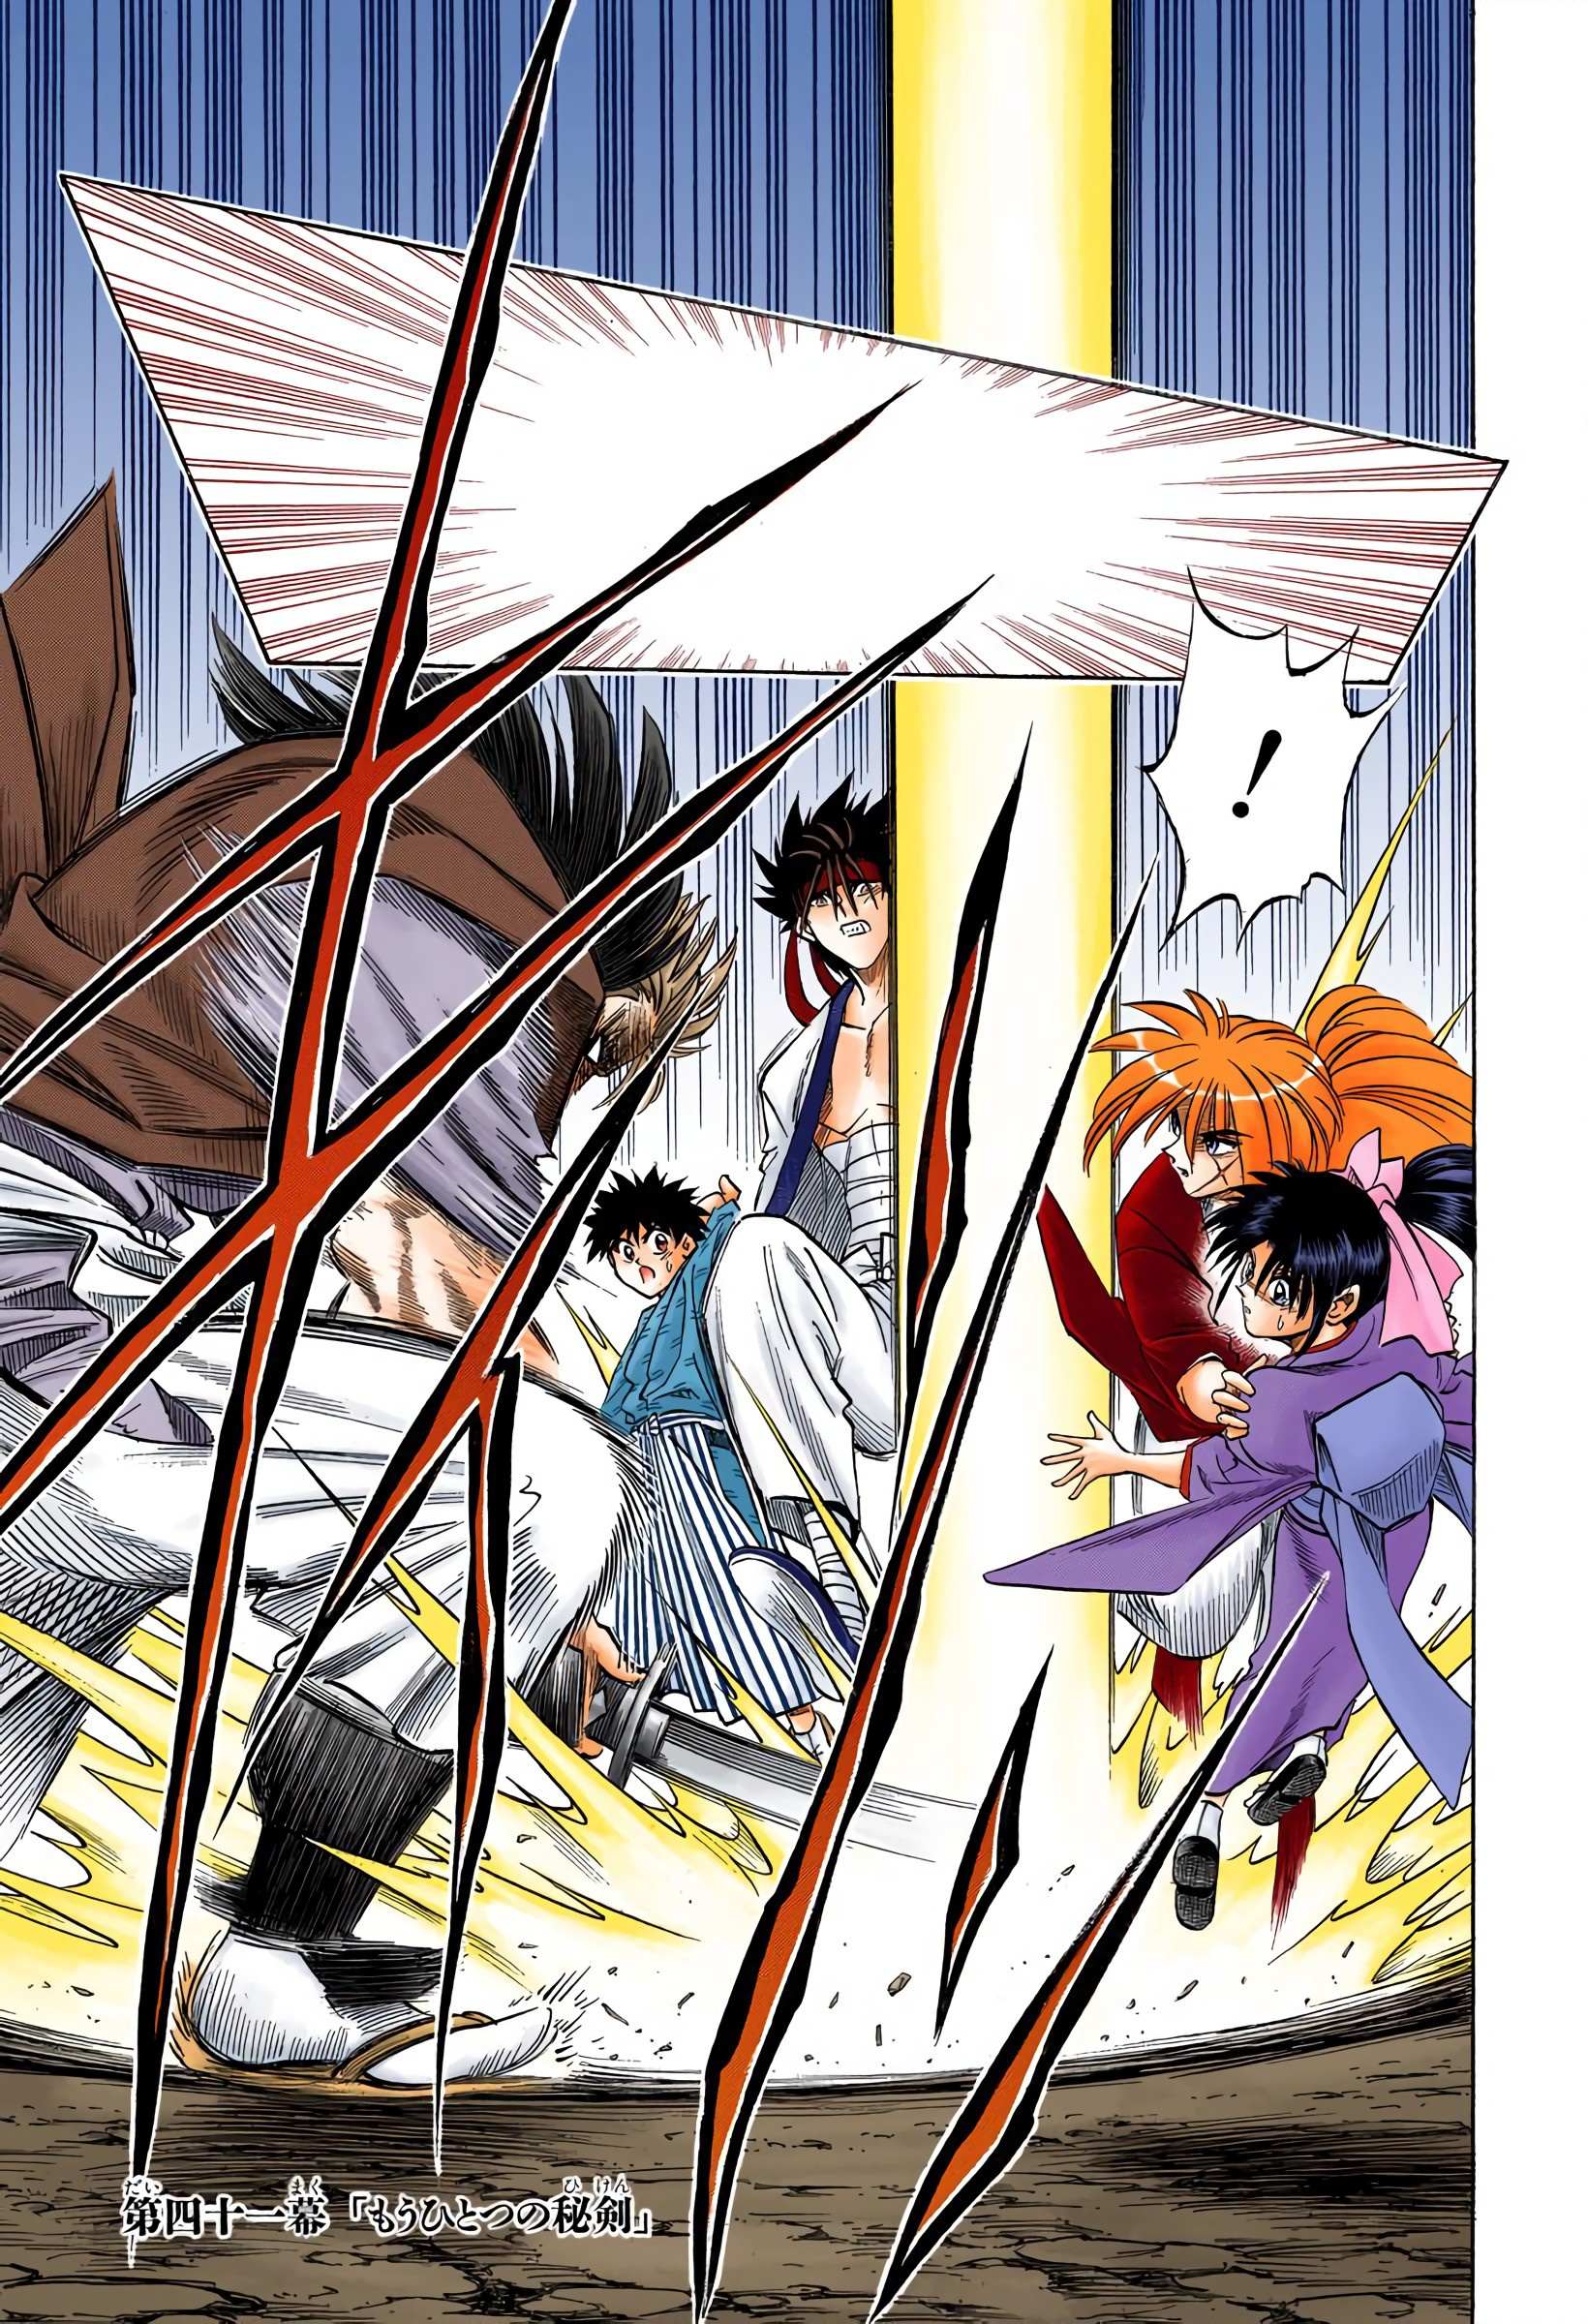 Rurouni Kenshin: Meiji Kenkaku Romantan - Digital Colored - chapter 41 - #1